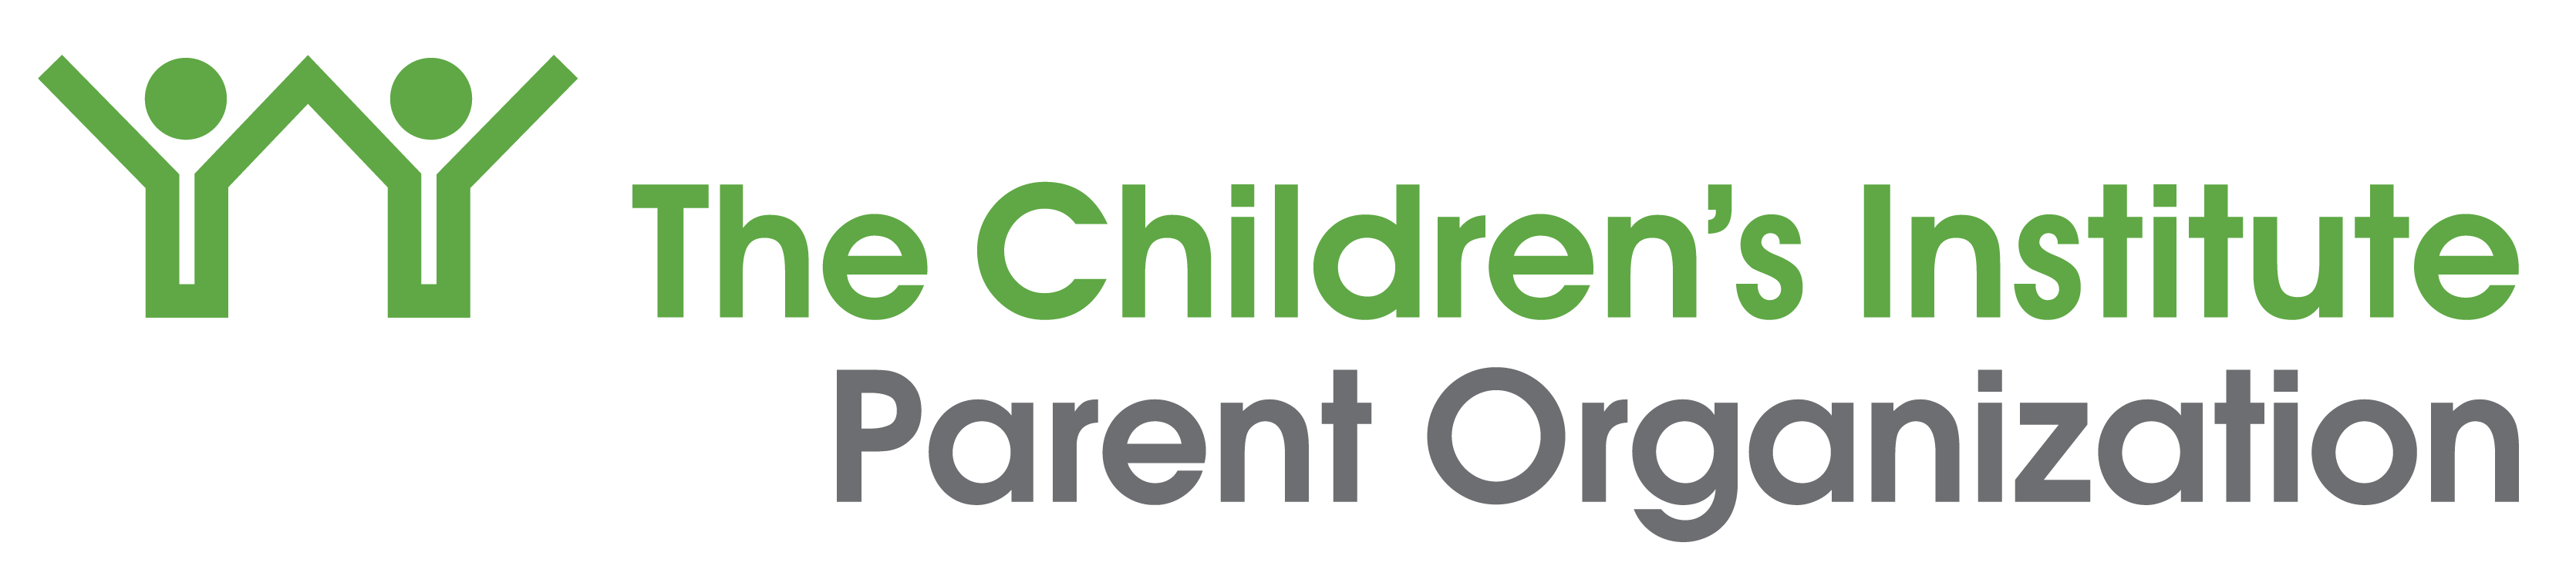 The Children's Institute Parent Organization